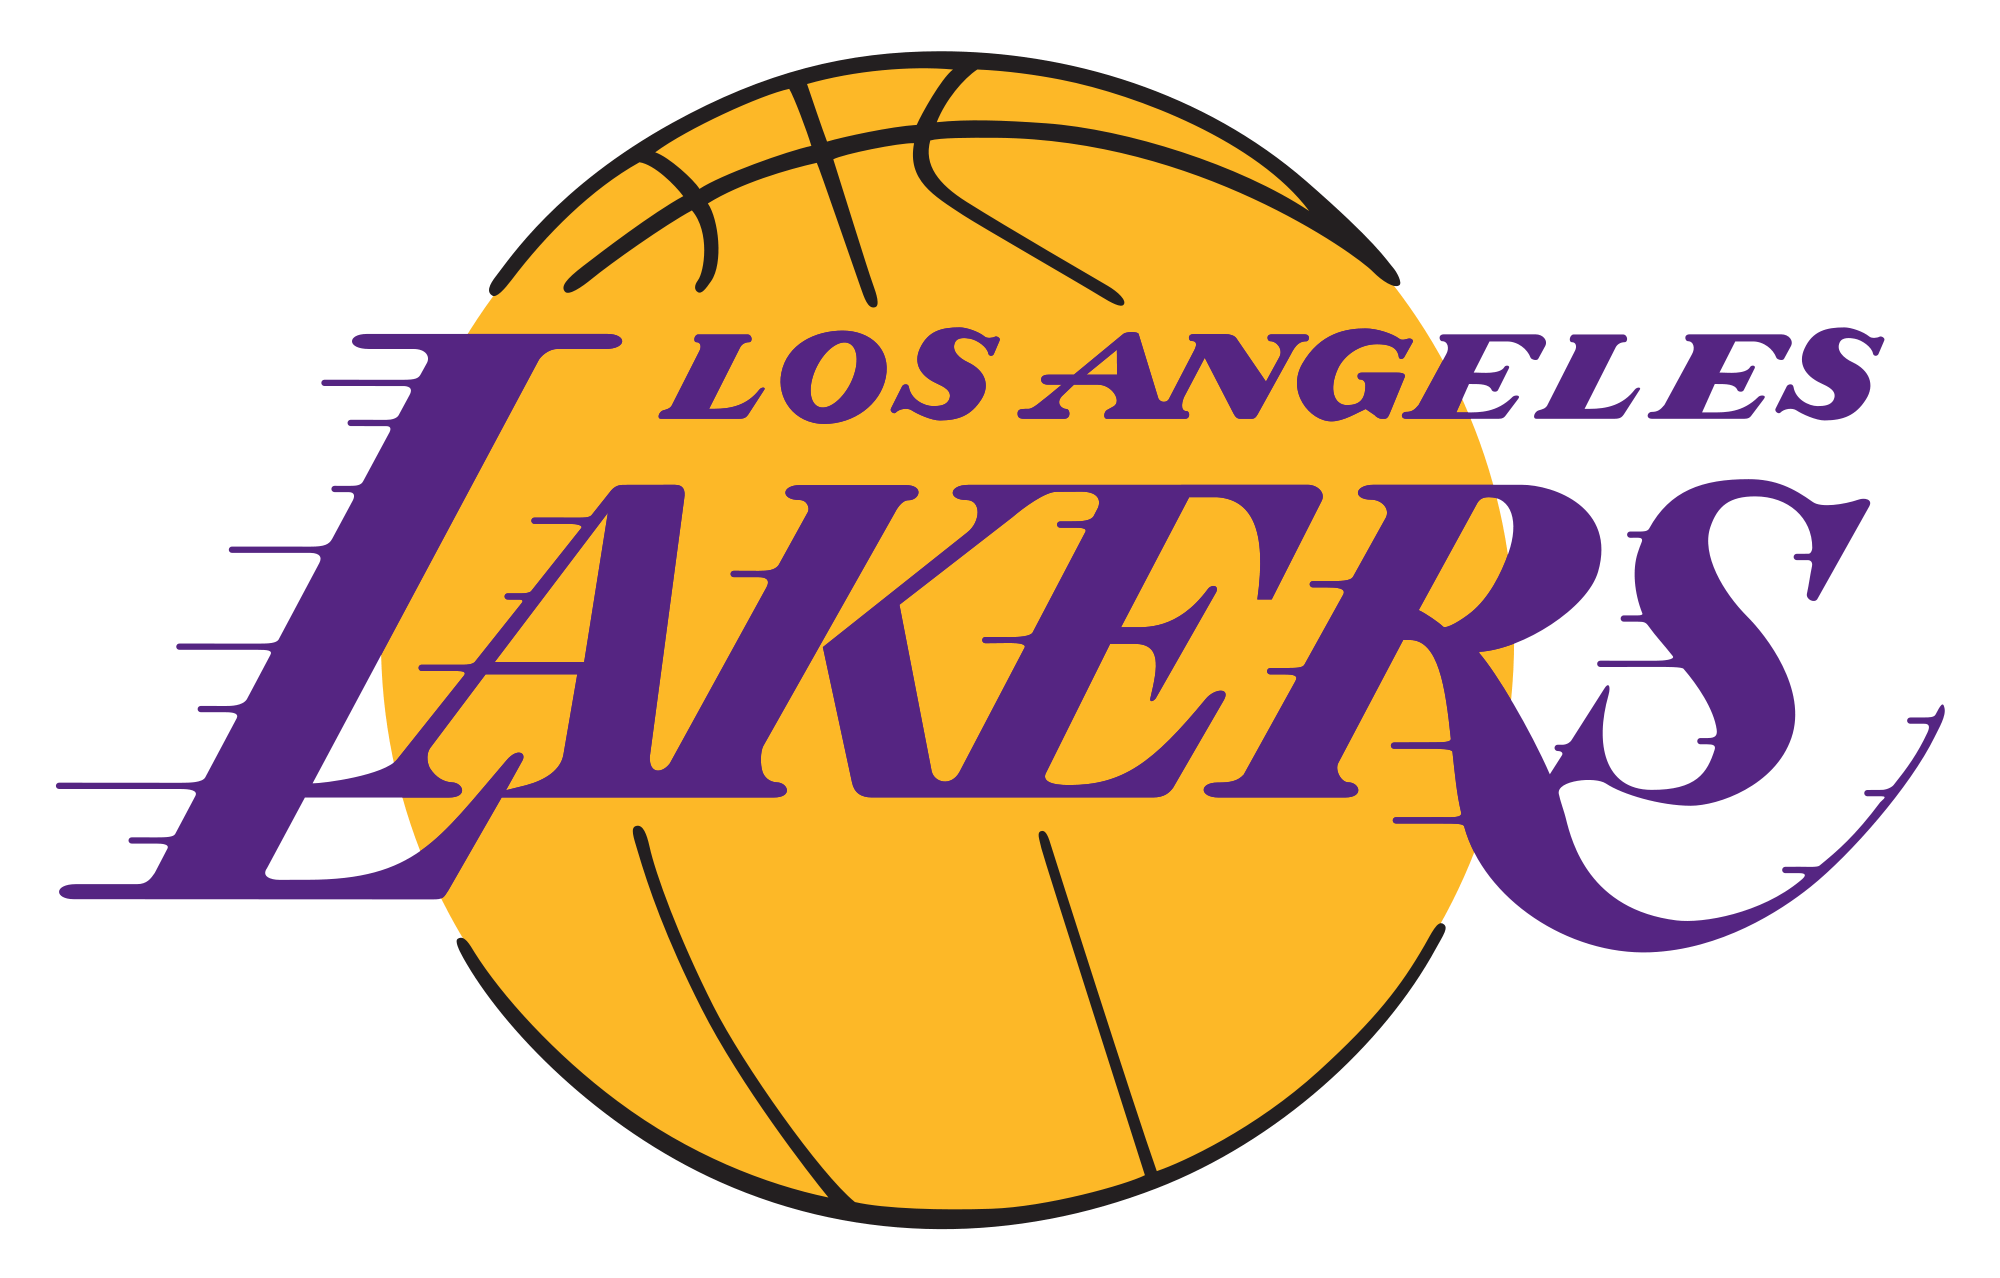 NBA Basketball Team Logo - NBA Team Logos Wallpaper 2016